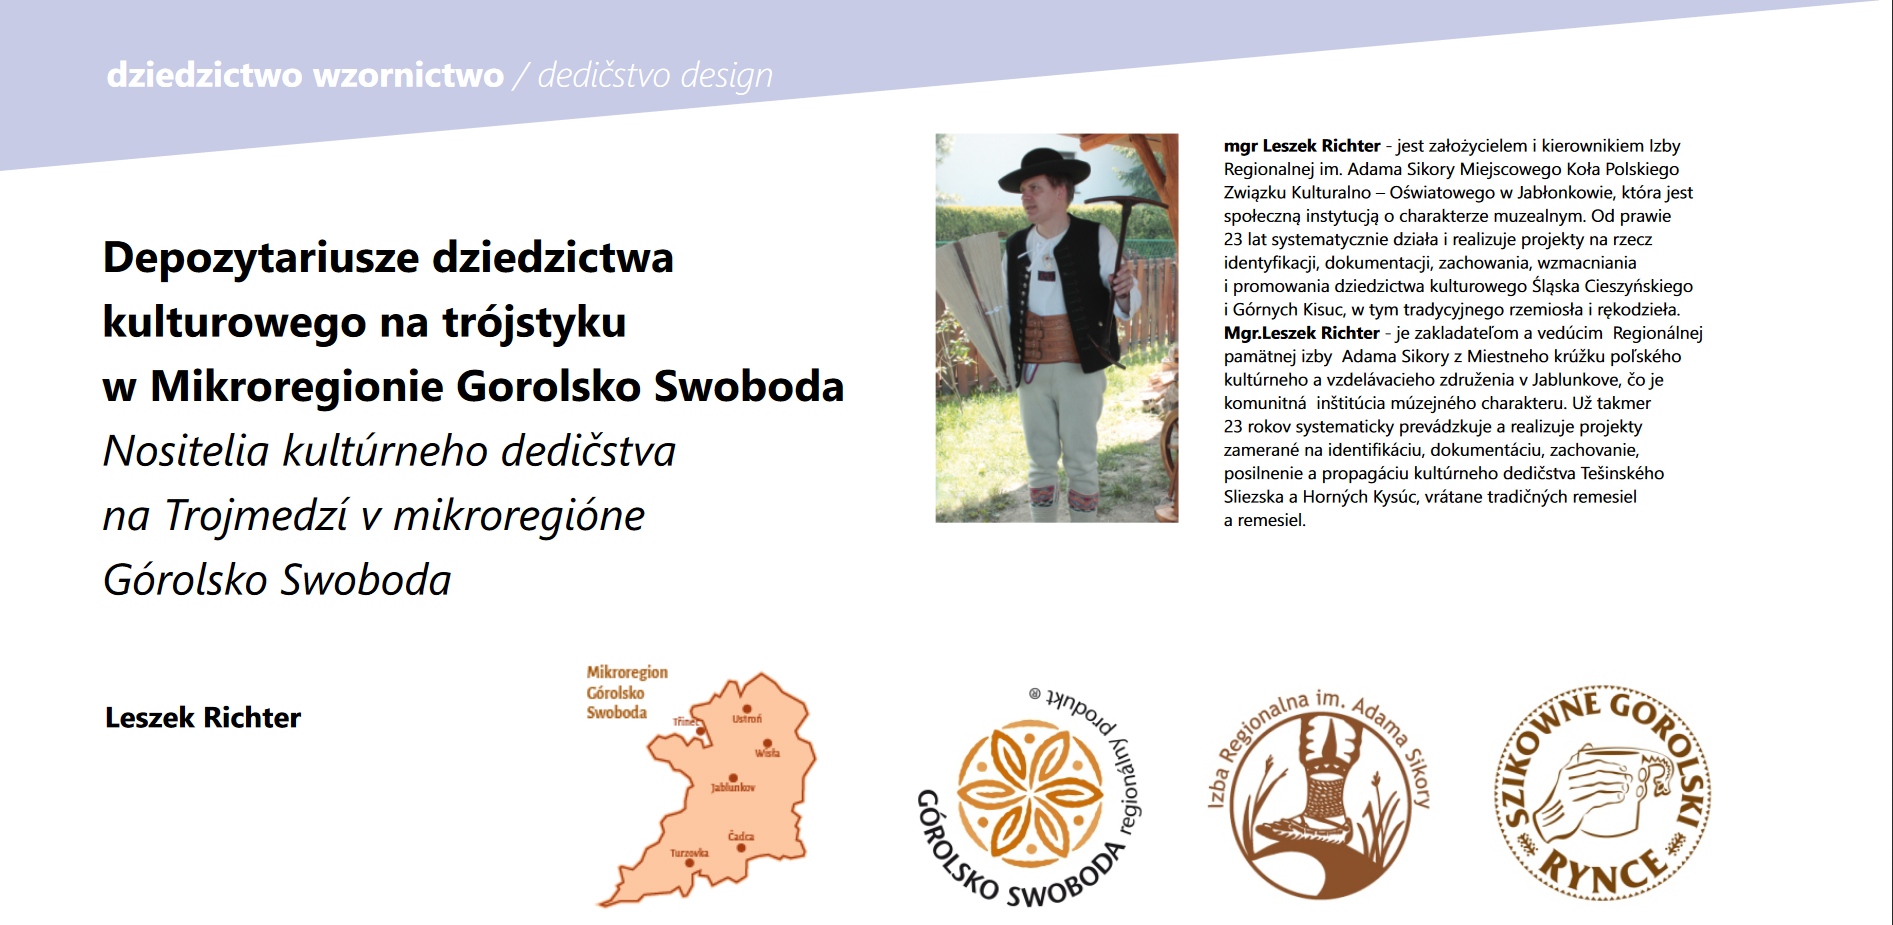 Depozytariusze dziedzictwa kulturowego na trójstyku w Mikroregionie Gorolsko Swoboda